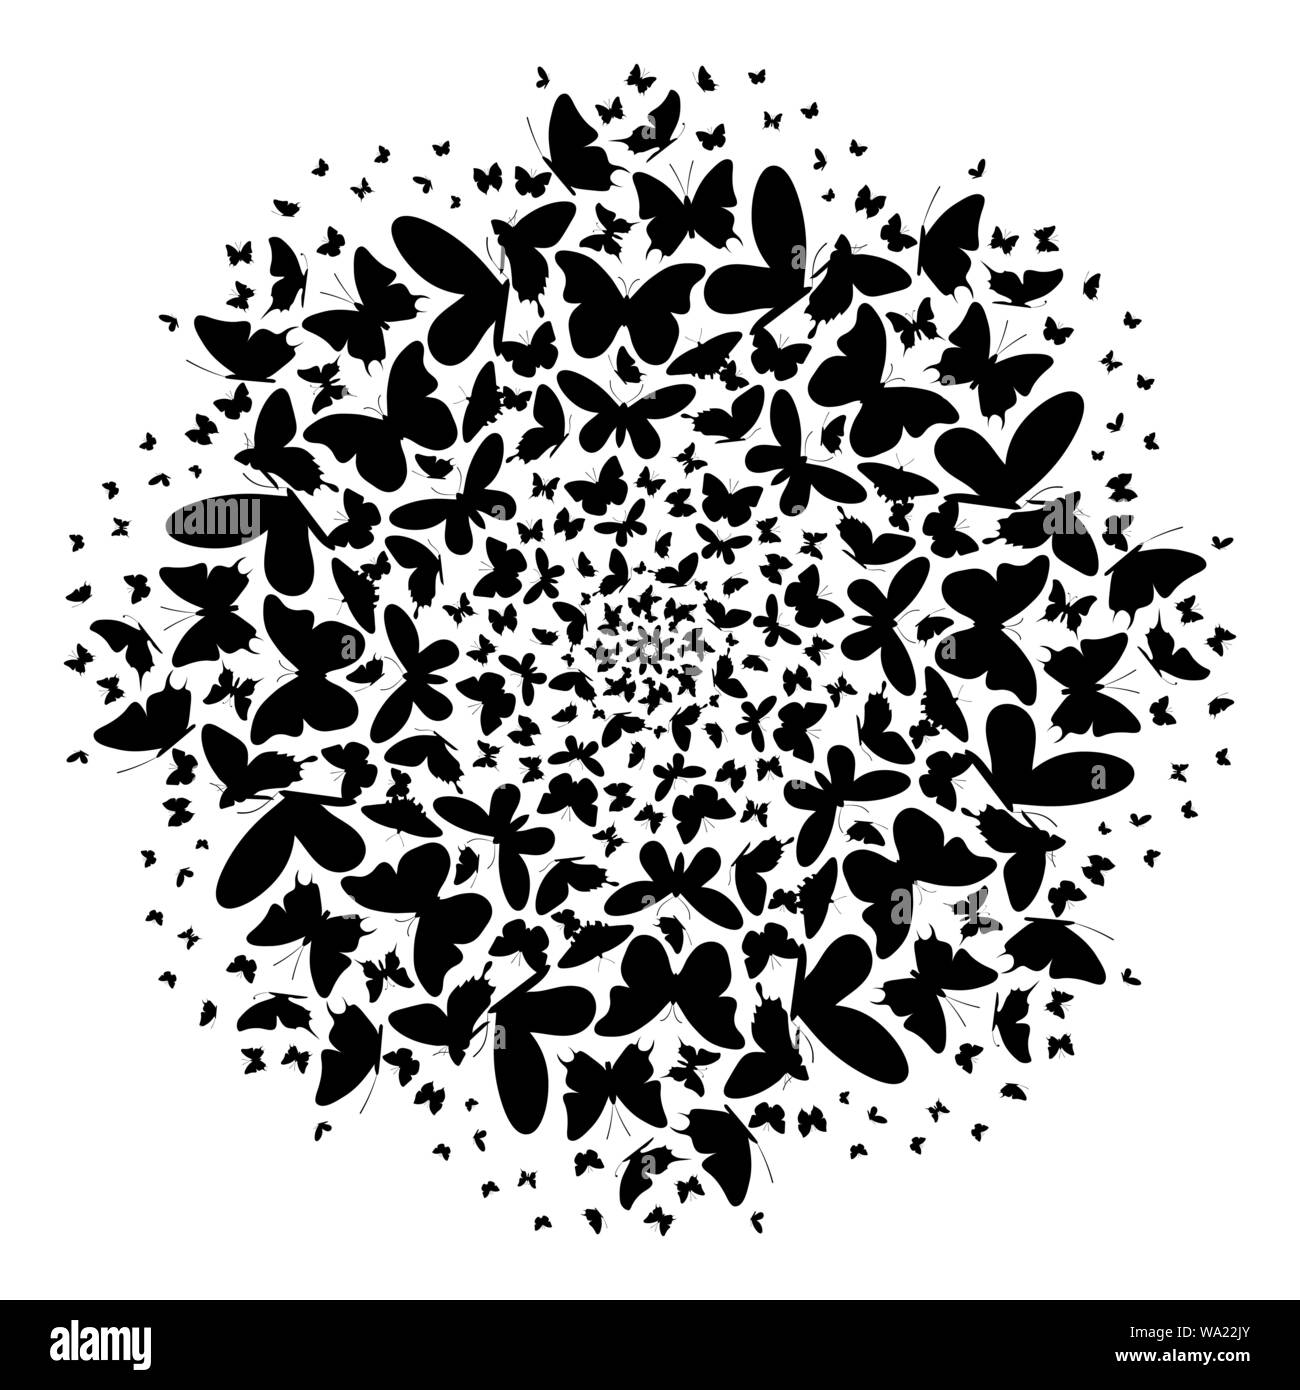 Sfondo bianco con il nero silhouette delle farfalle di turbolenza del cerchio Illustrazione Vettoriale